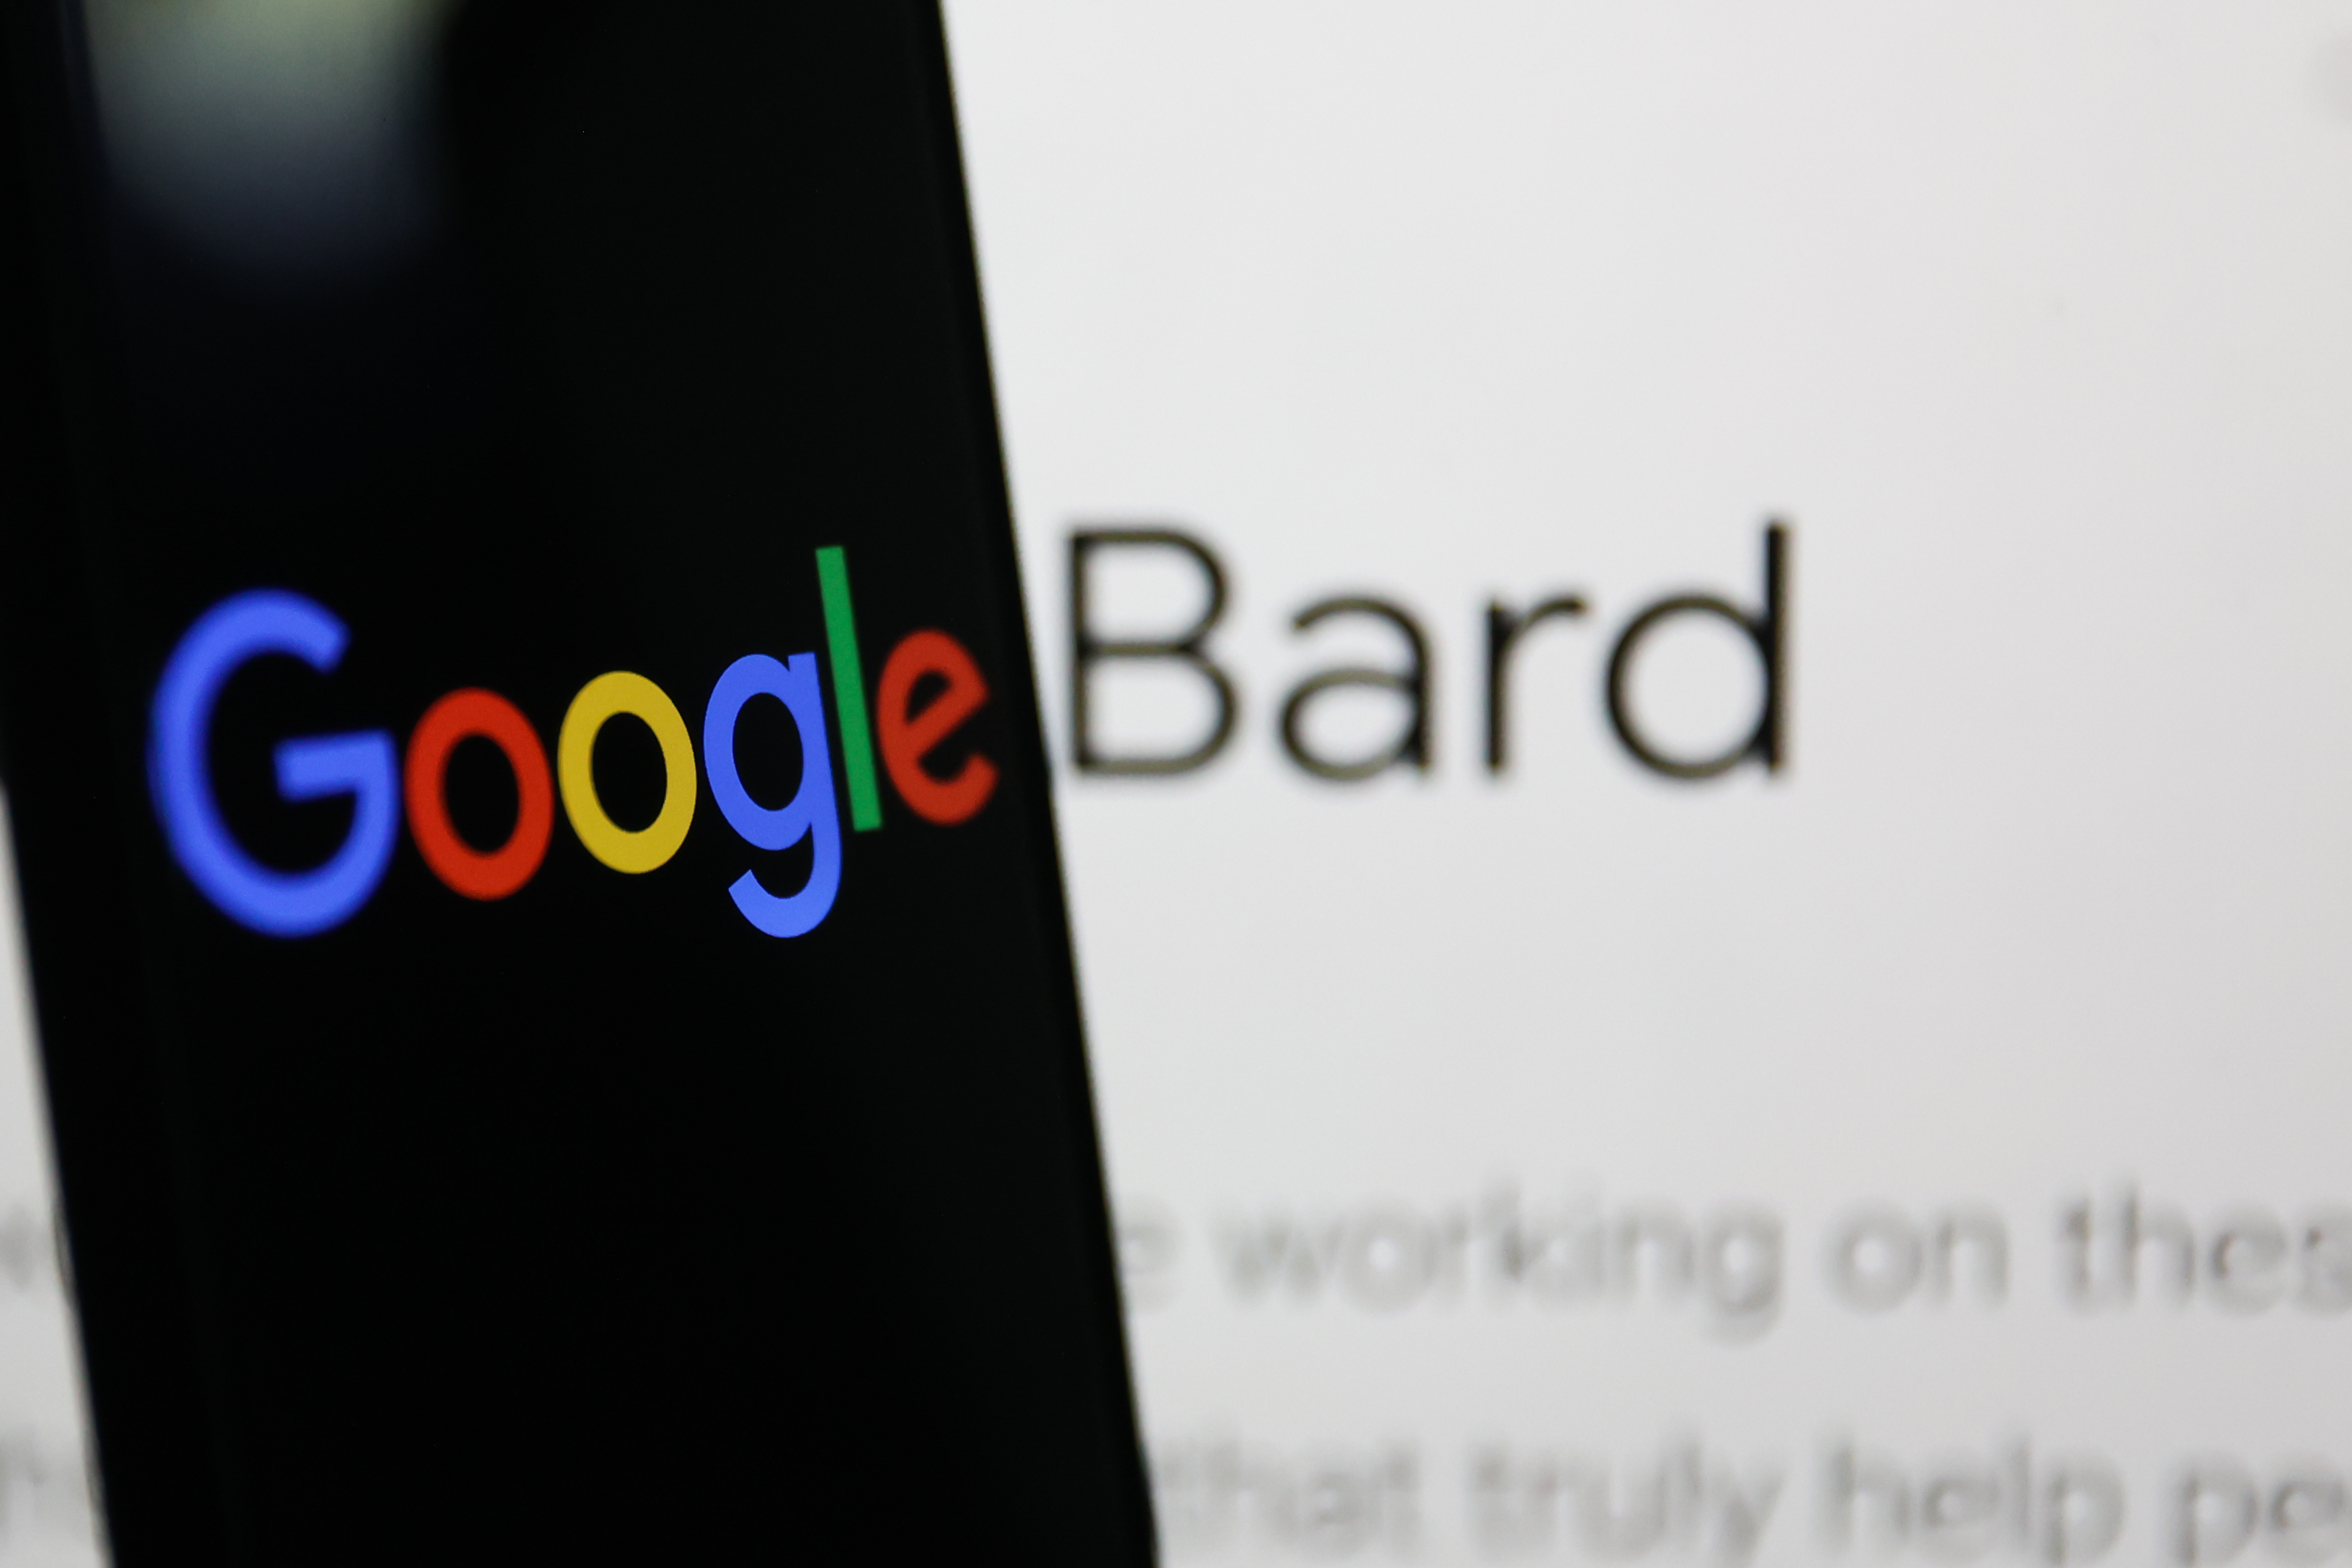 Bard, l’IA 'd’imagination augmentée' de Google arrive en France